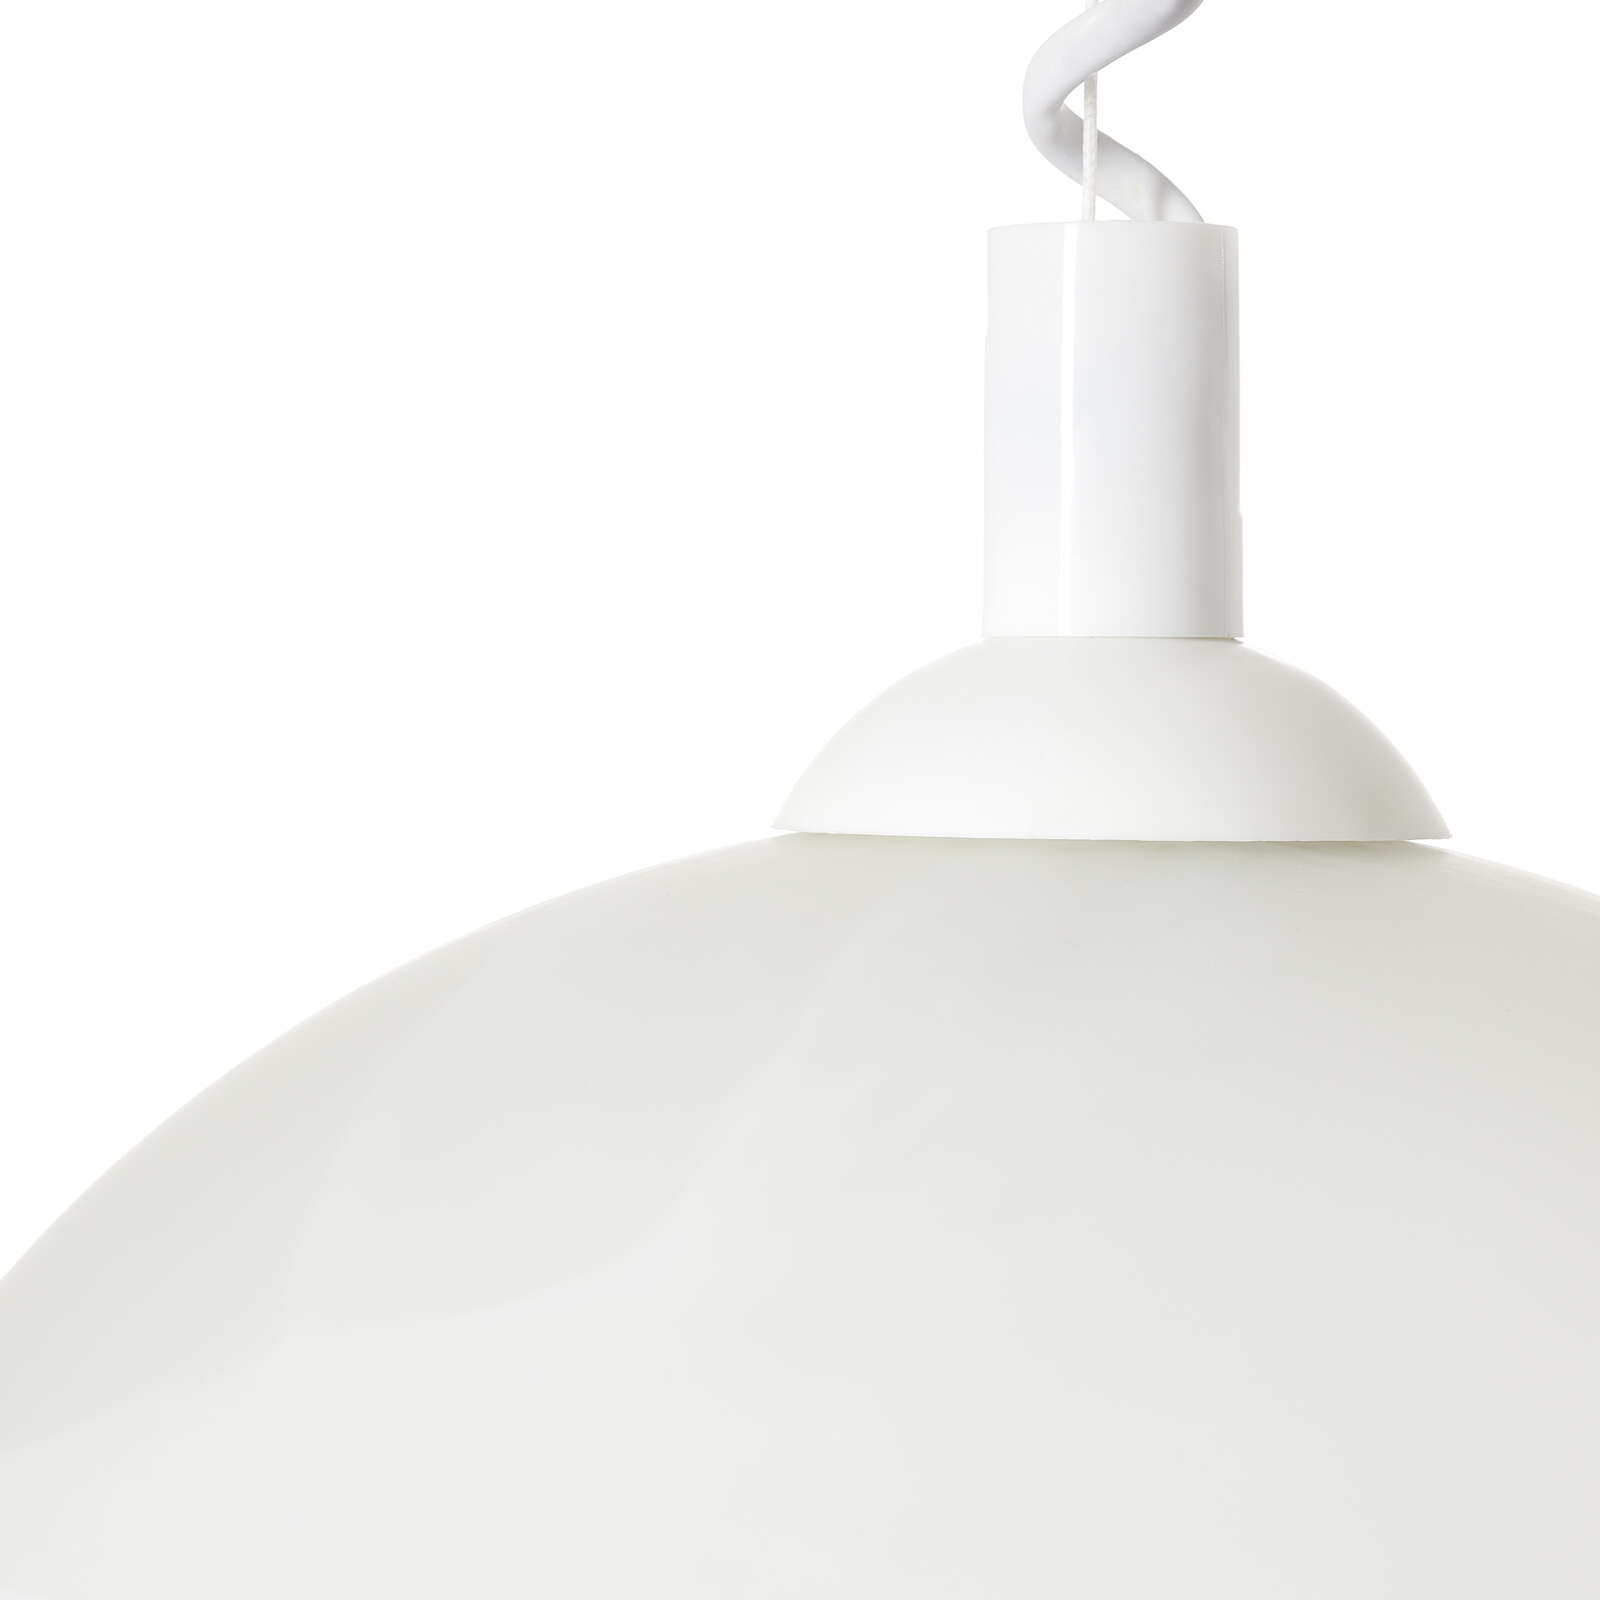             Lámpara colgante de cristal - Gregor - Blanco
        